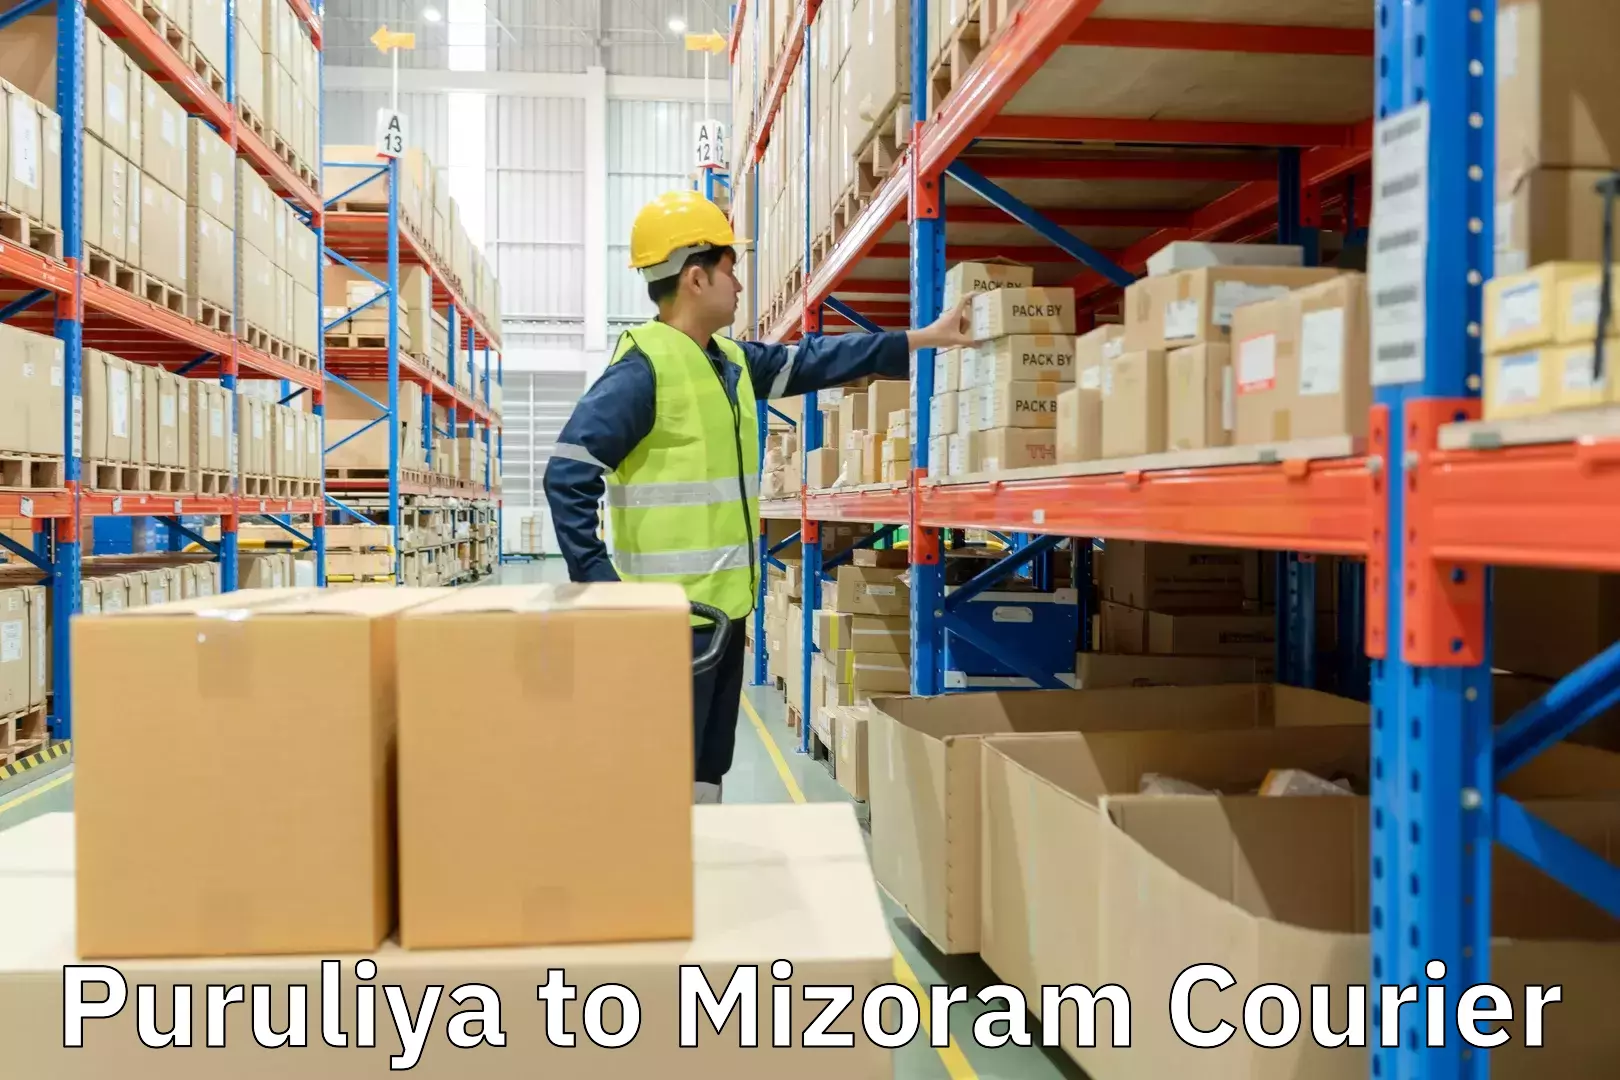 Next-generation courier services Puruliya to Mizoram